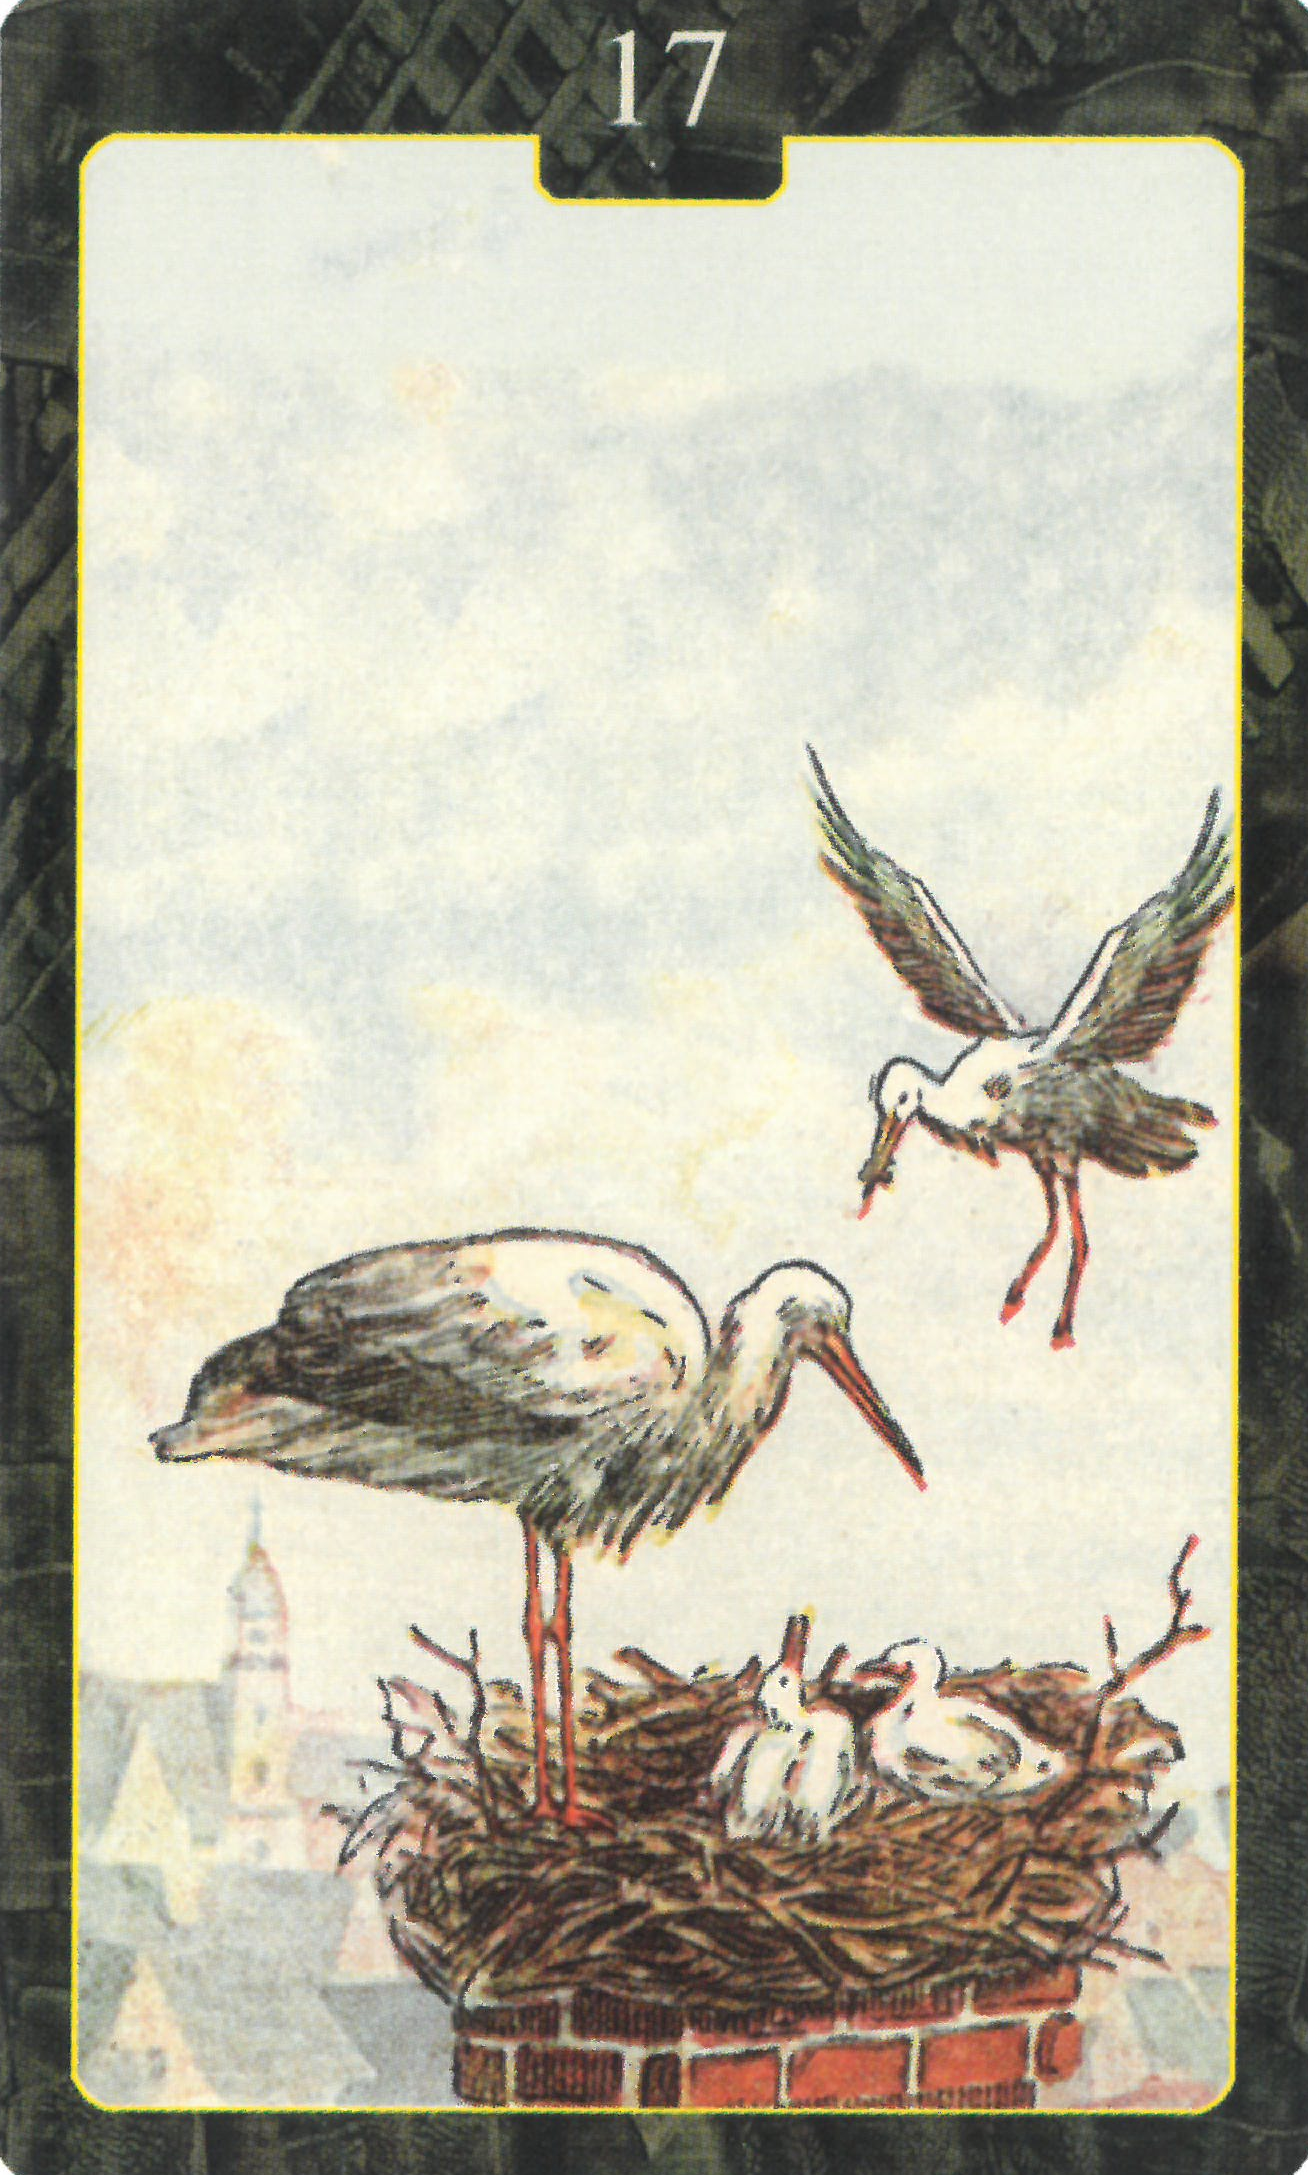 [오라클레노먼드] 17번 Stork 황새 해석 및 의미